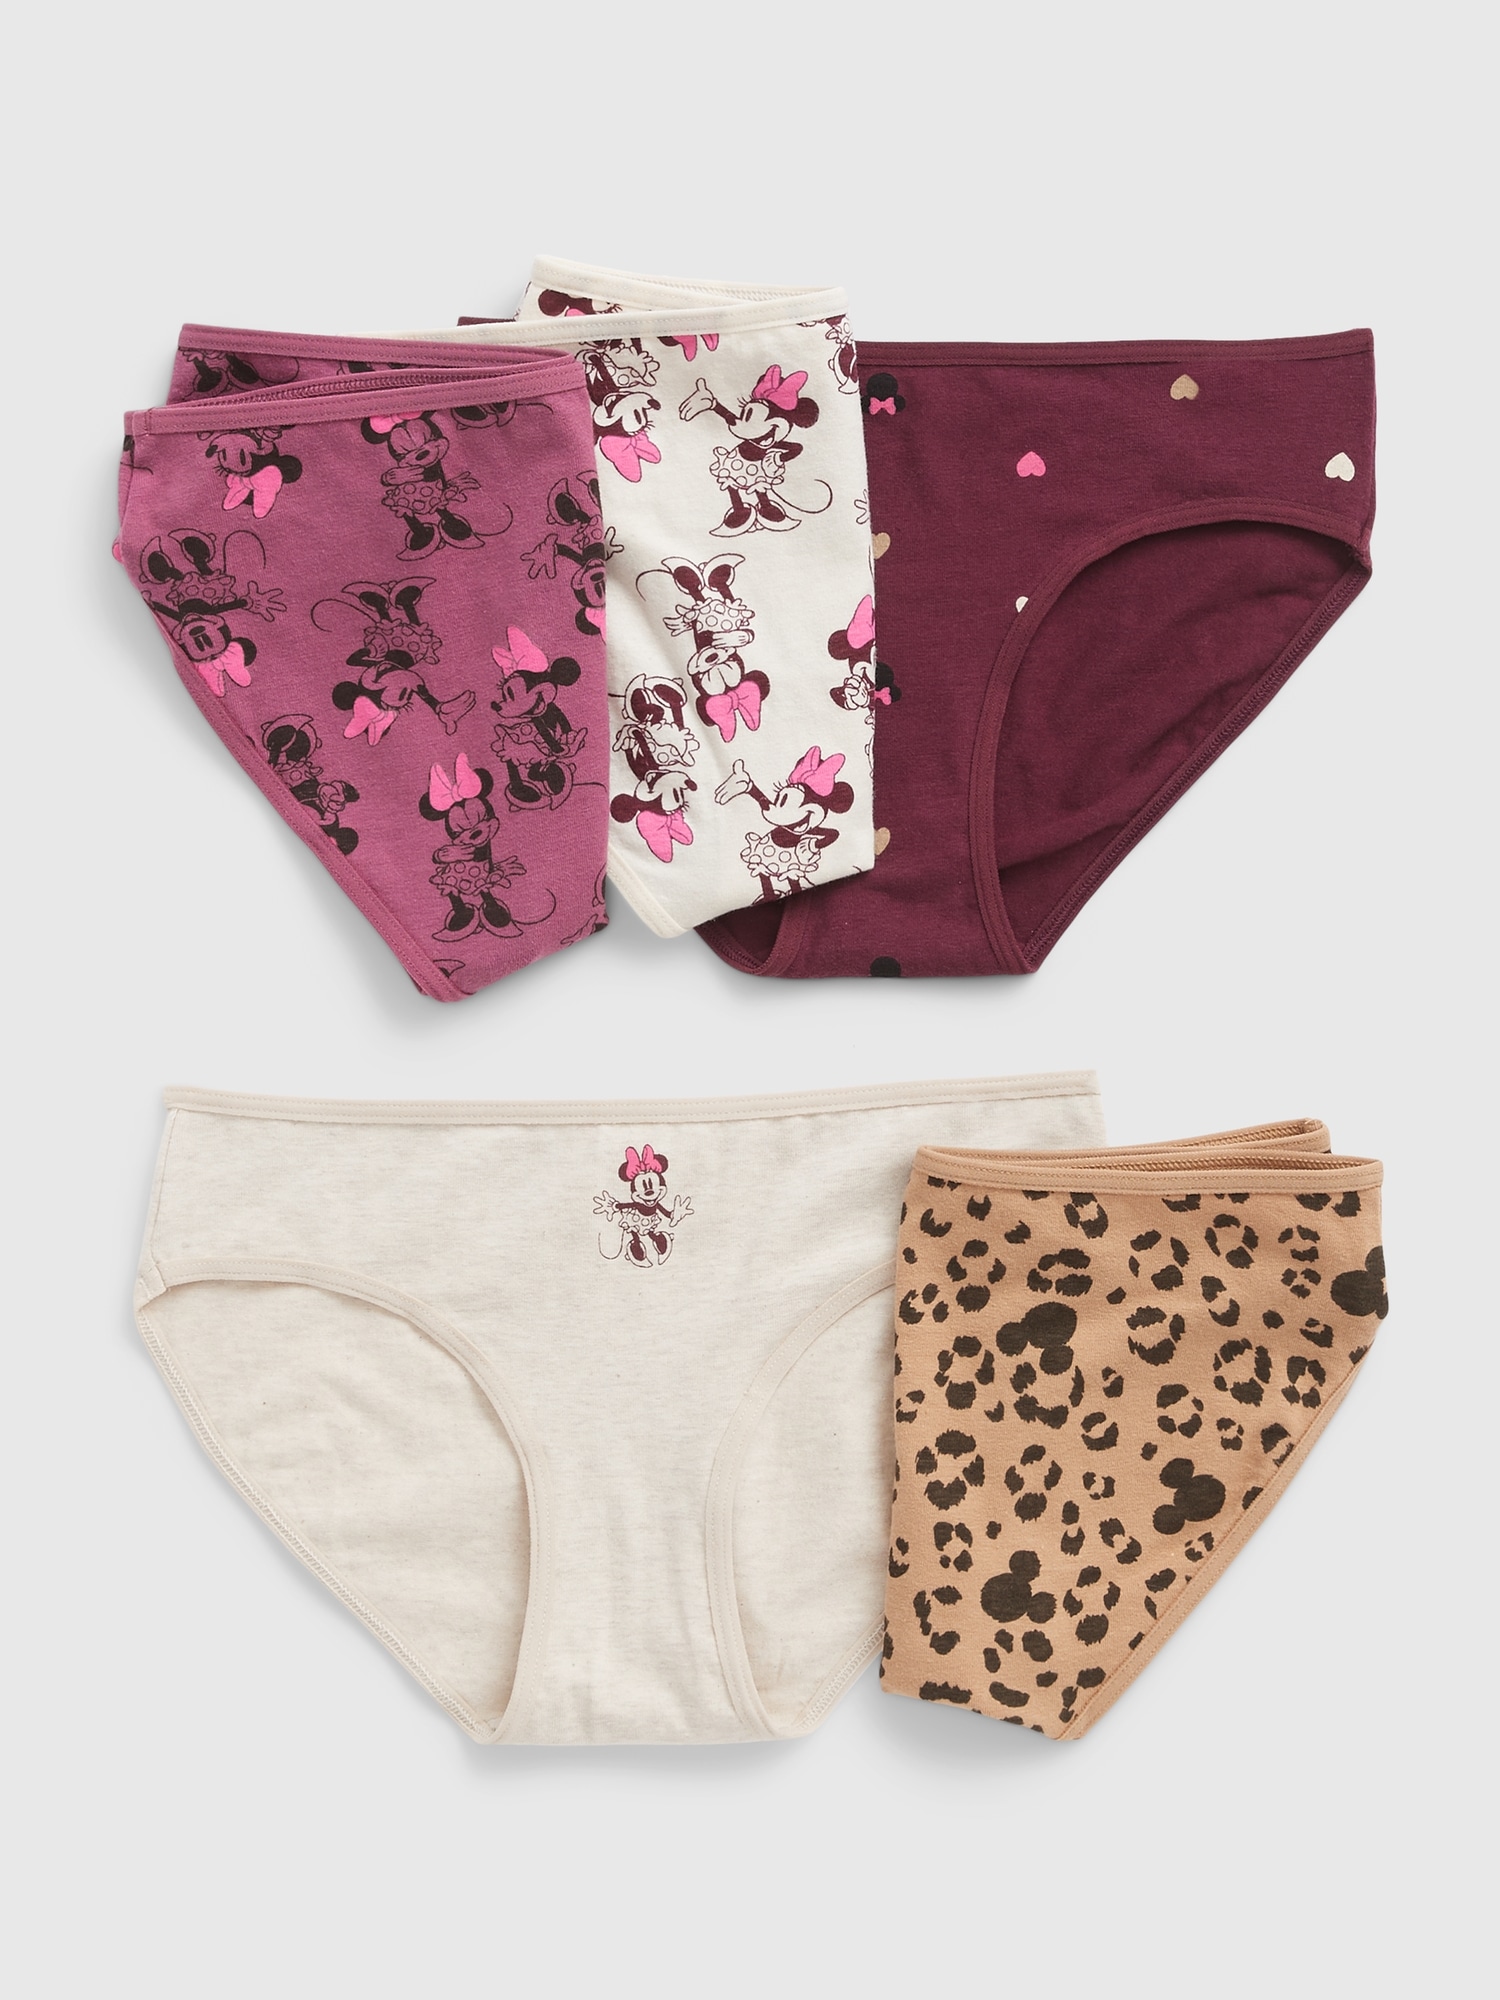 Disney Minnie Mouse Undies Cotton Underwear 7 Panty Girls Toddler Size 4T  NIP